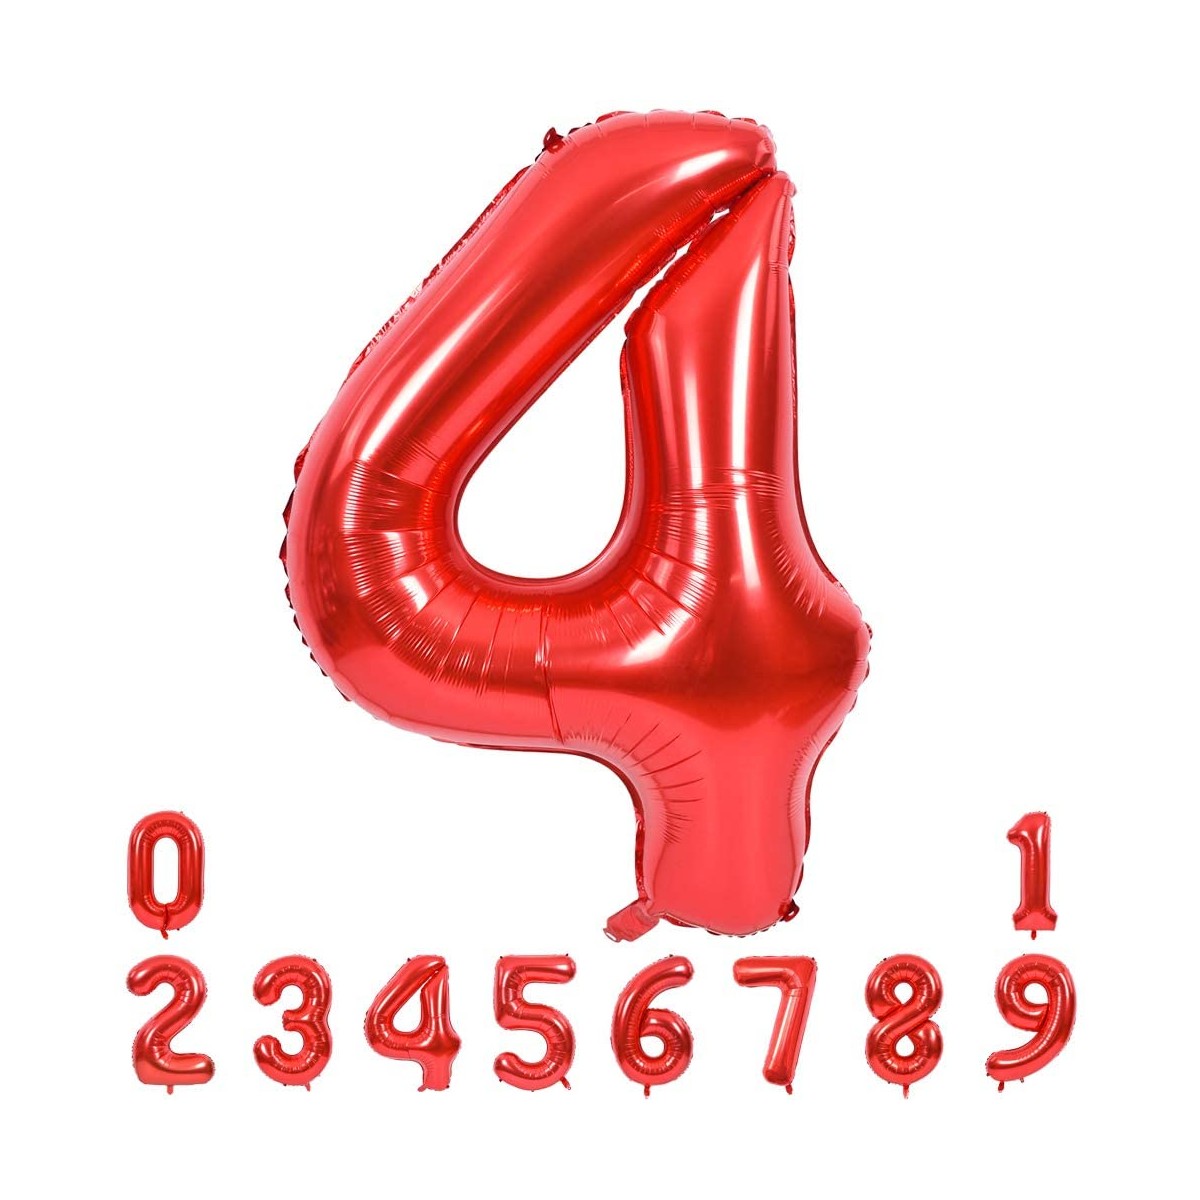 Palloncino numerico rosso, formato maxi, per feste